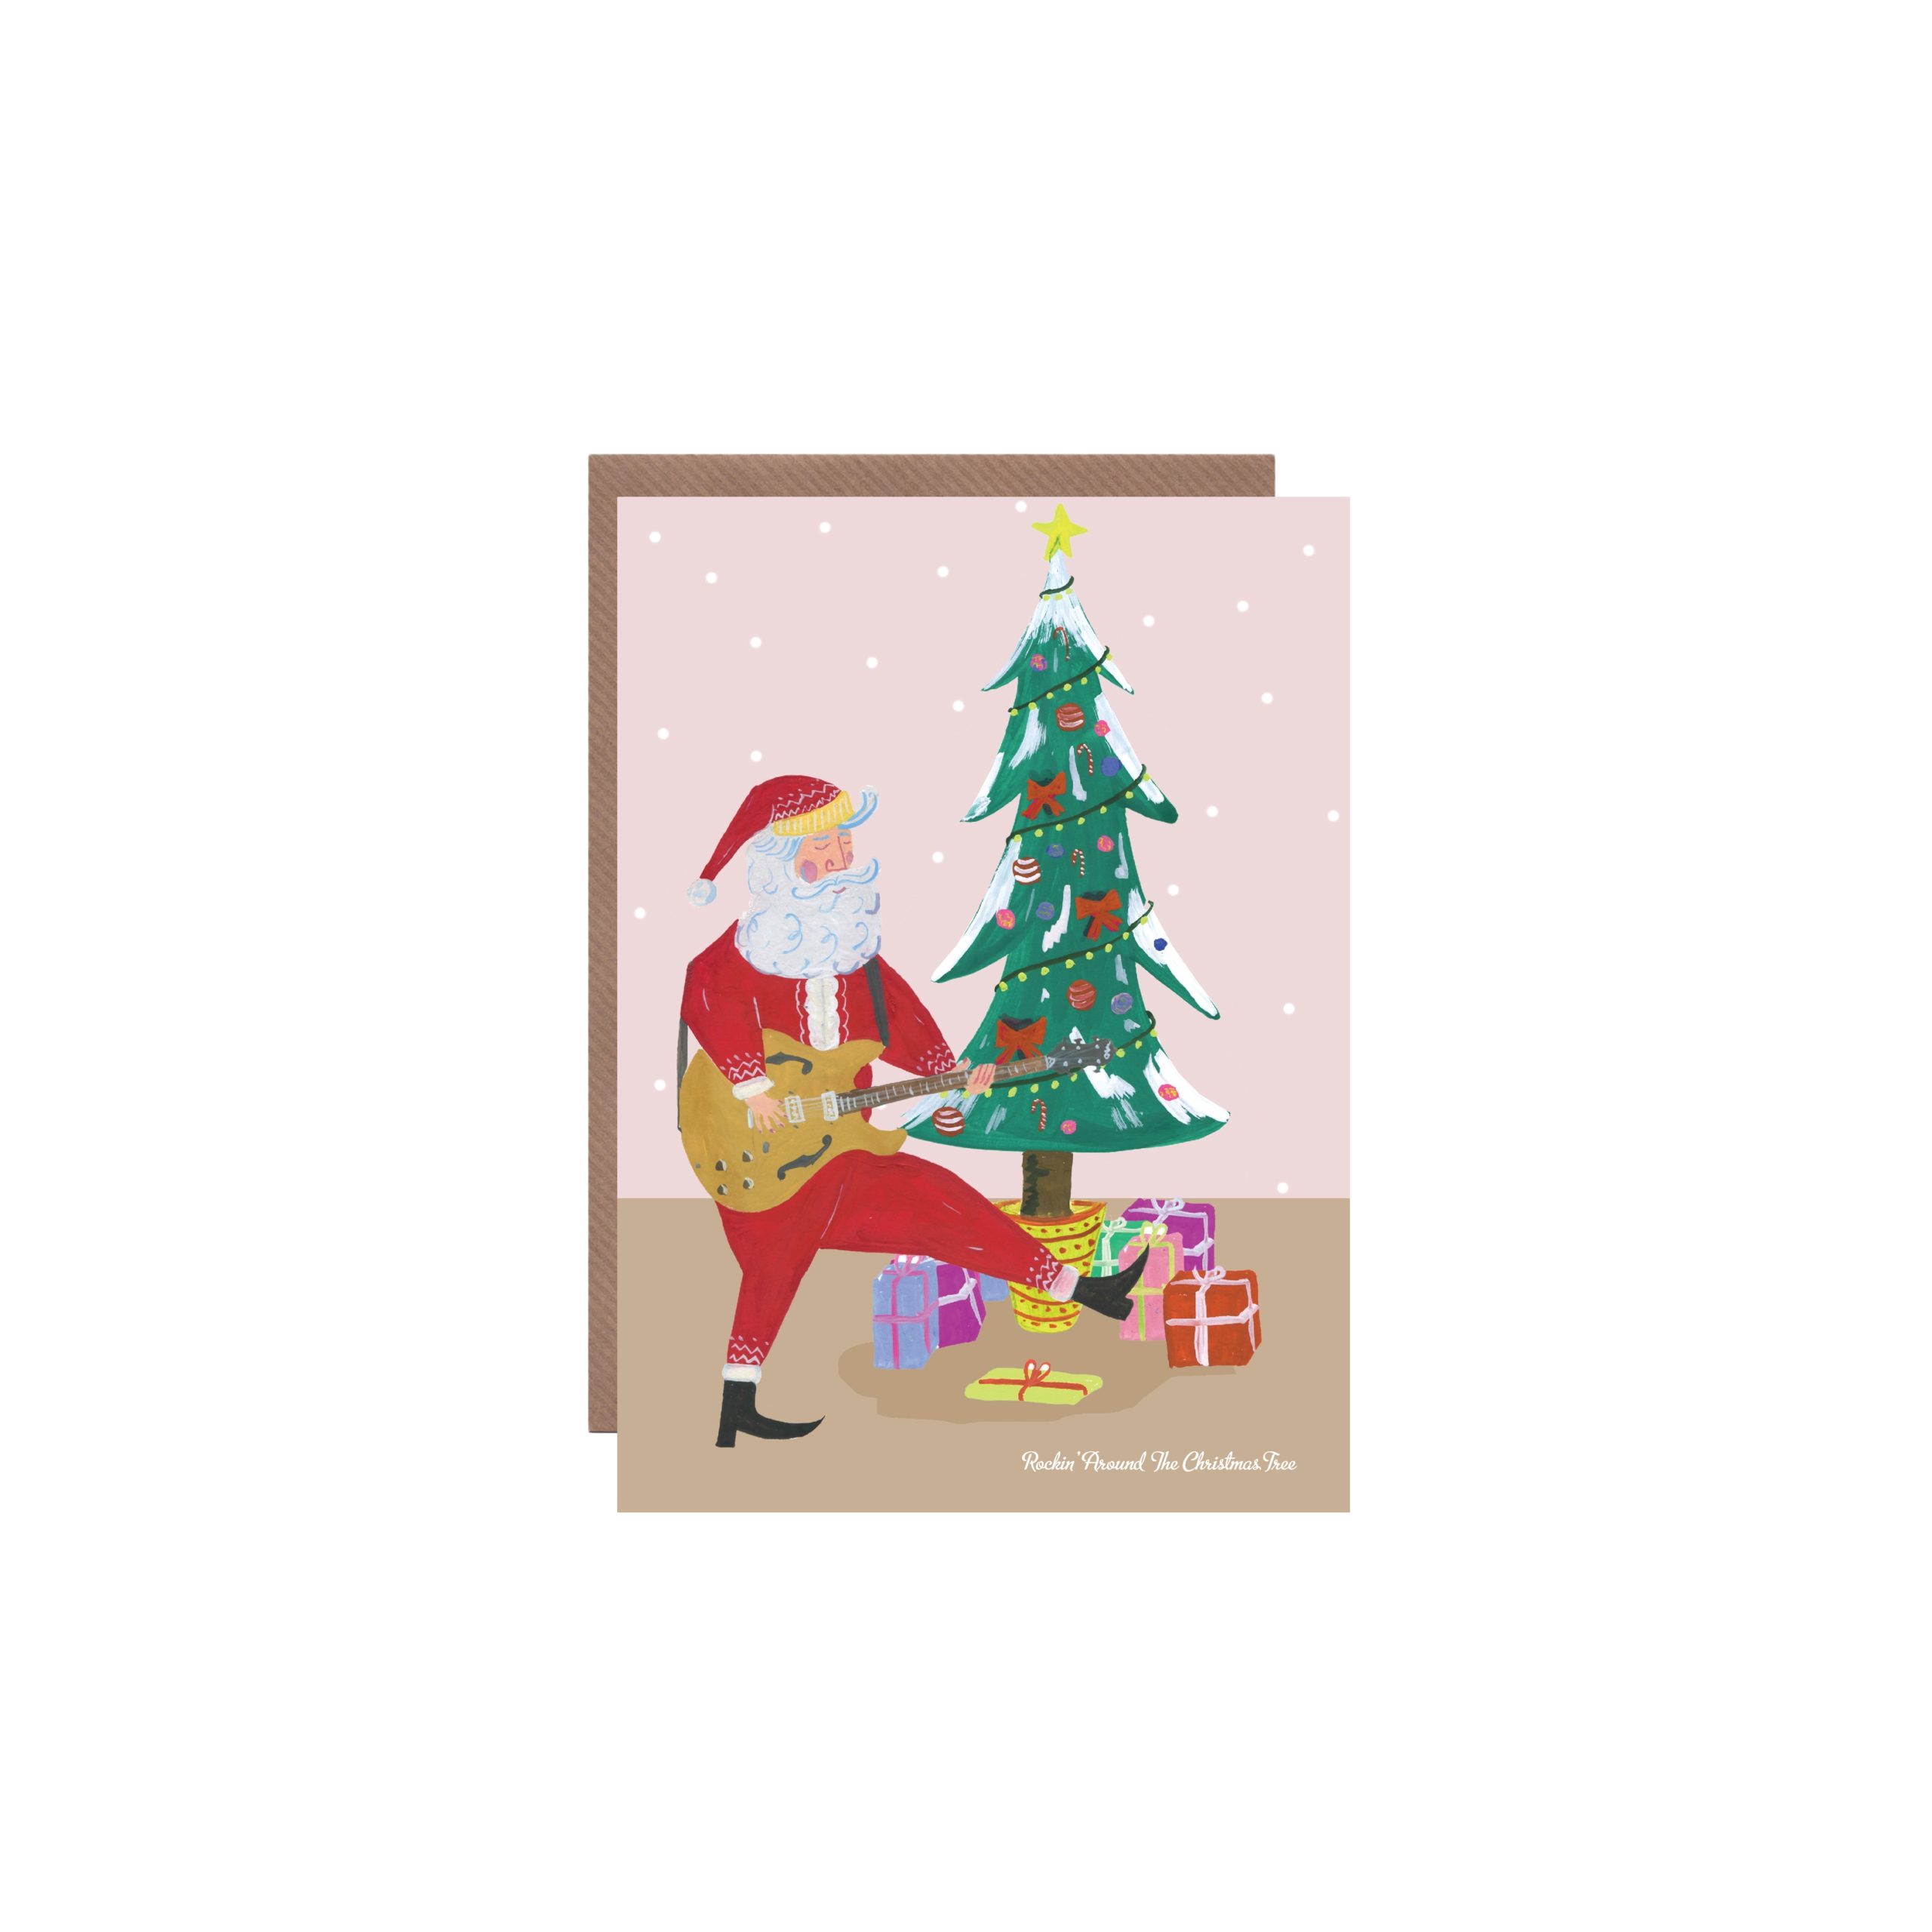 https://dogandponyshow.com/wp-content/uploads/2021/09/Rockin-Santa-Holiday-Card2-scaled.jpeg